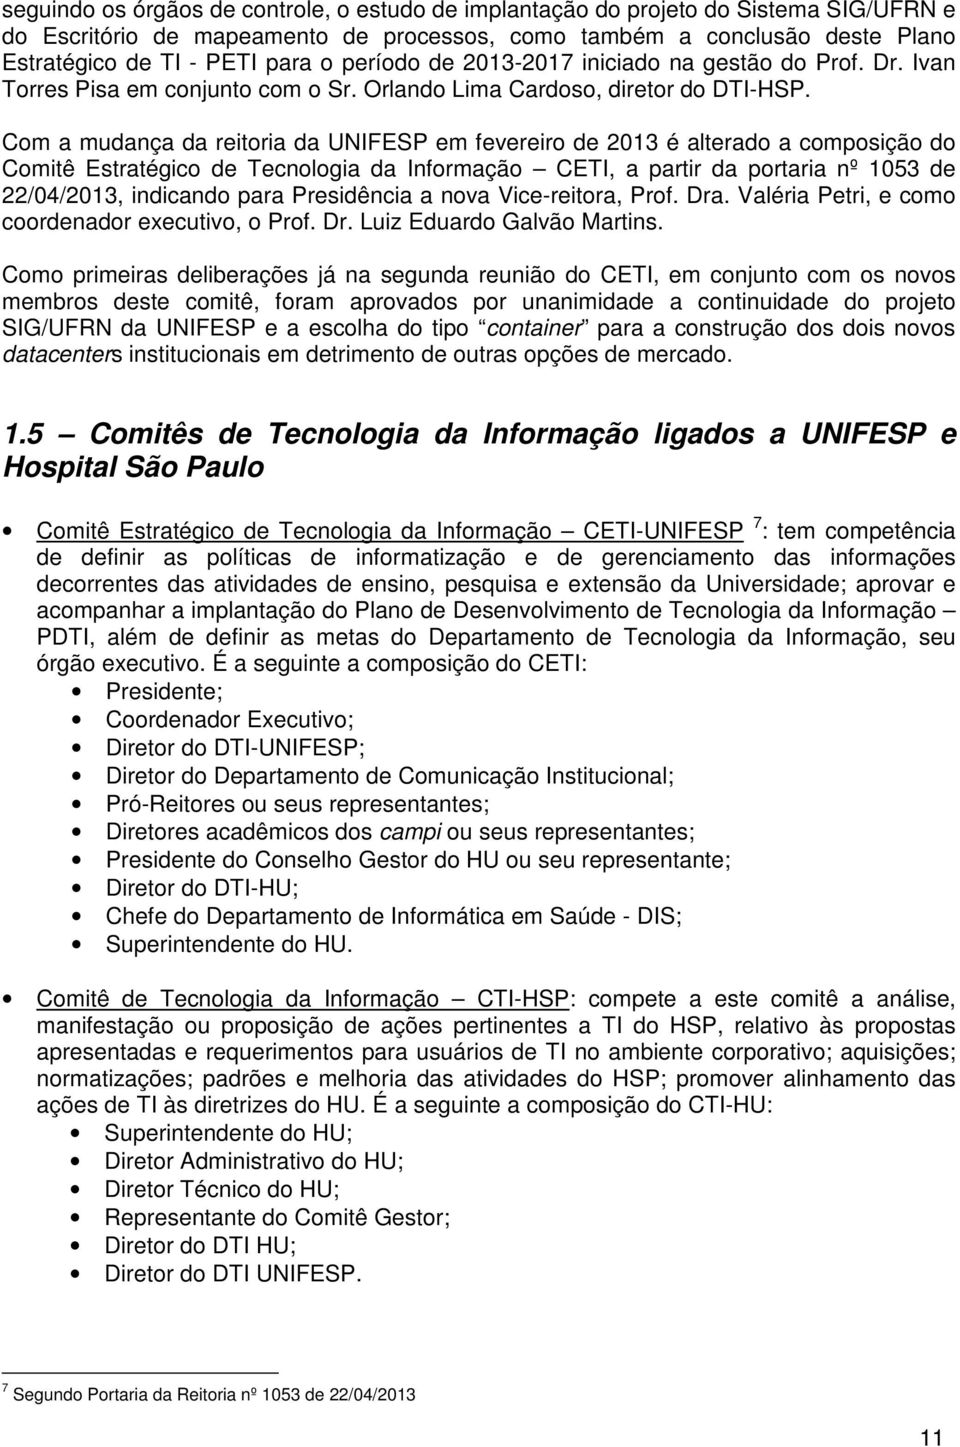 Com a mudança da reitoria da UNIFESP em fevereiro de 2013 é alterado a composição do Comitê Estratégico de Tecnologia da Informação CETI, a partir da portaria nº 1053 de 22/04/2013, indicando para